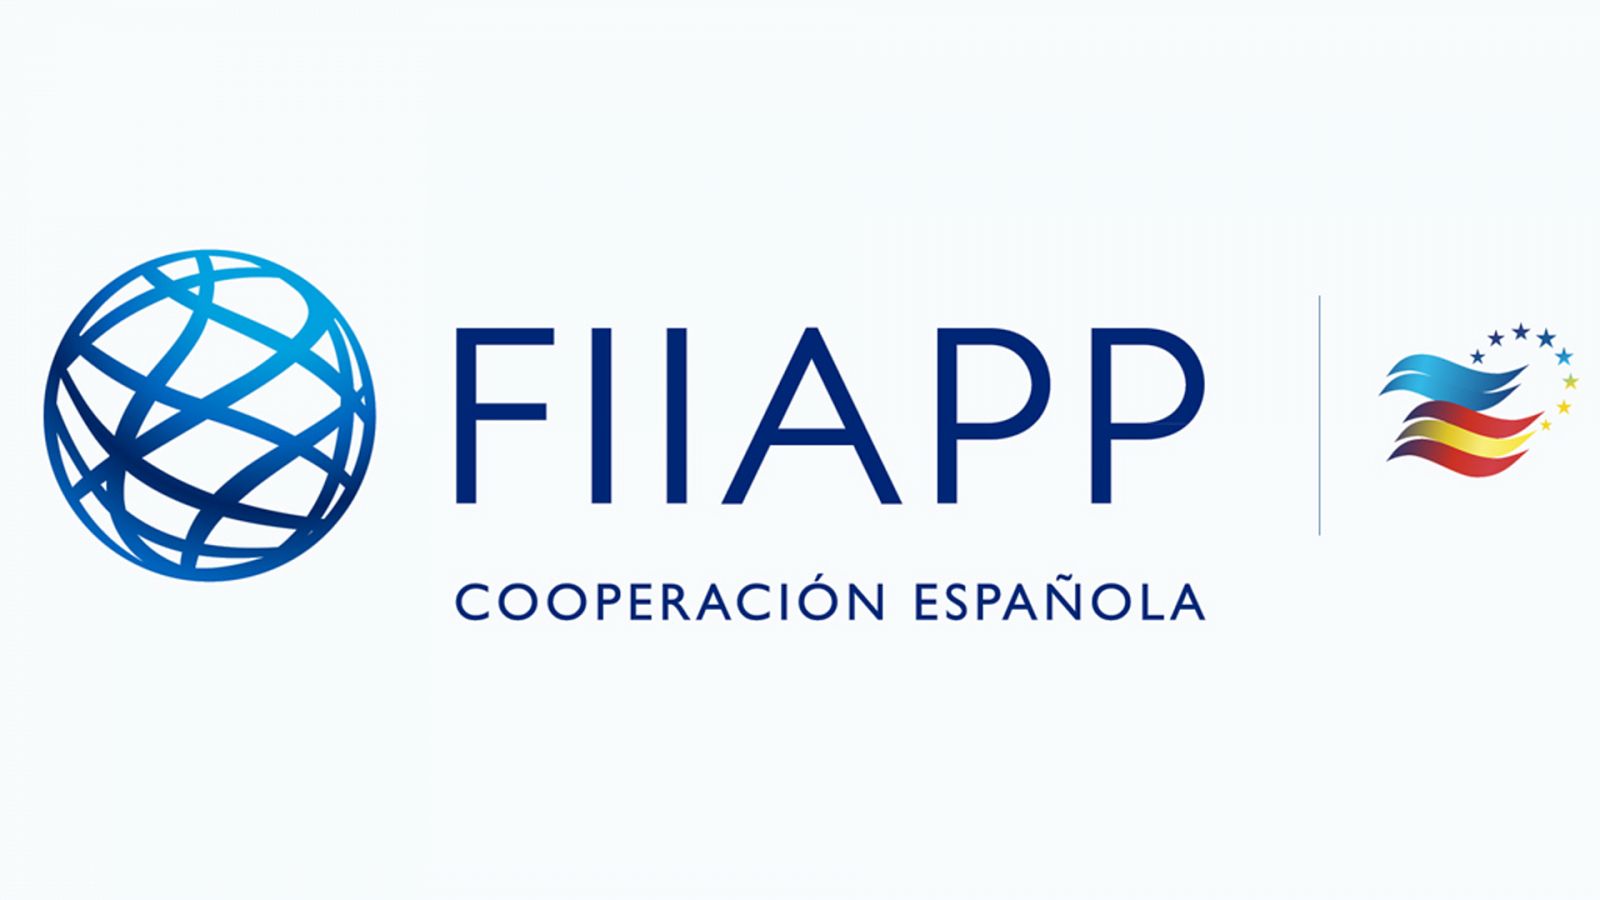 Cooperación pública en el mundo (Fiiapp) - Movilizar talento público, una inversión - 07/09/22 - escuchar ahora